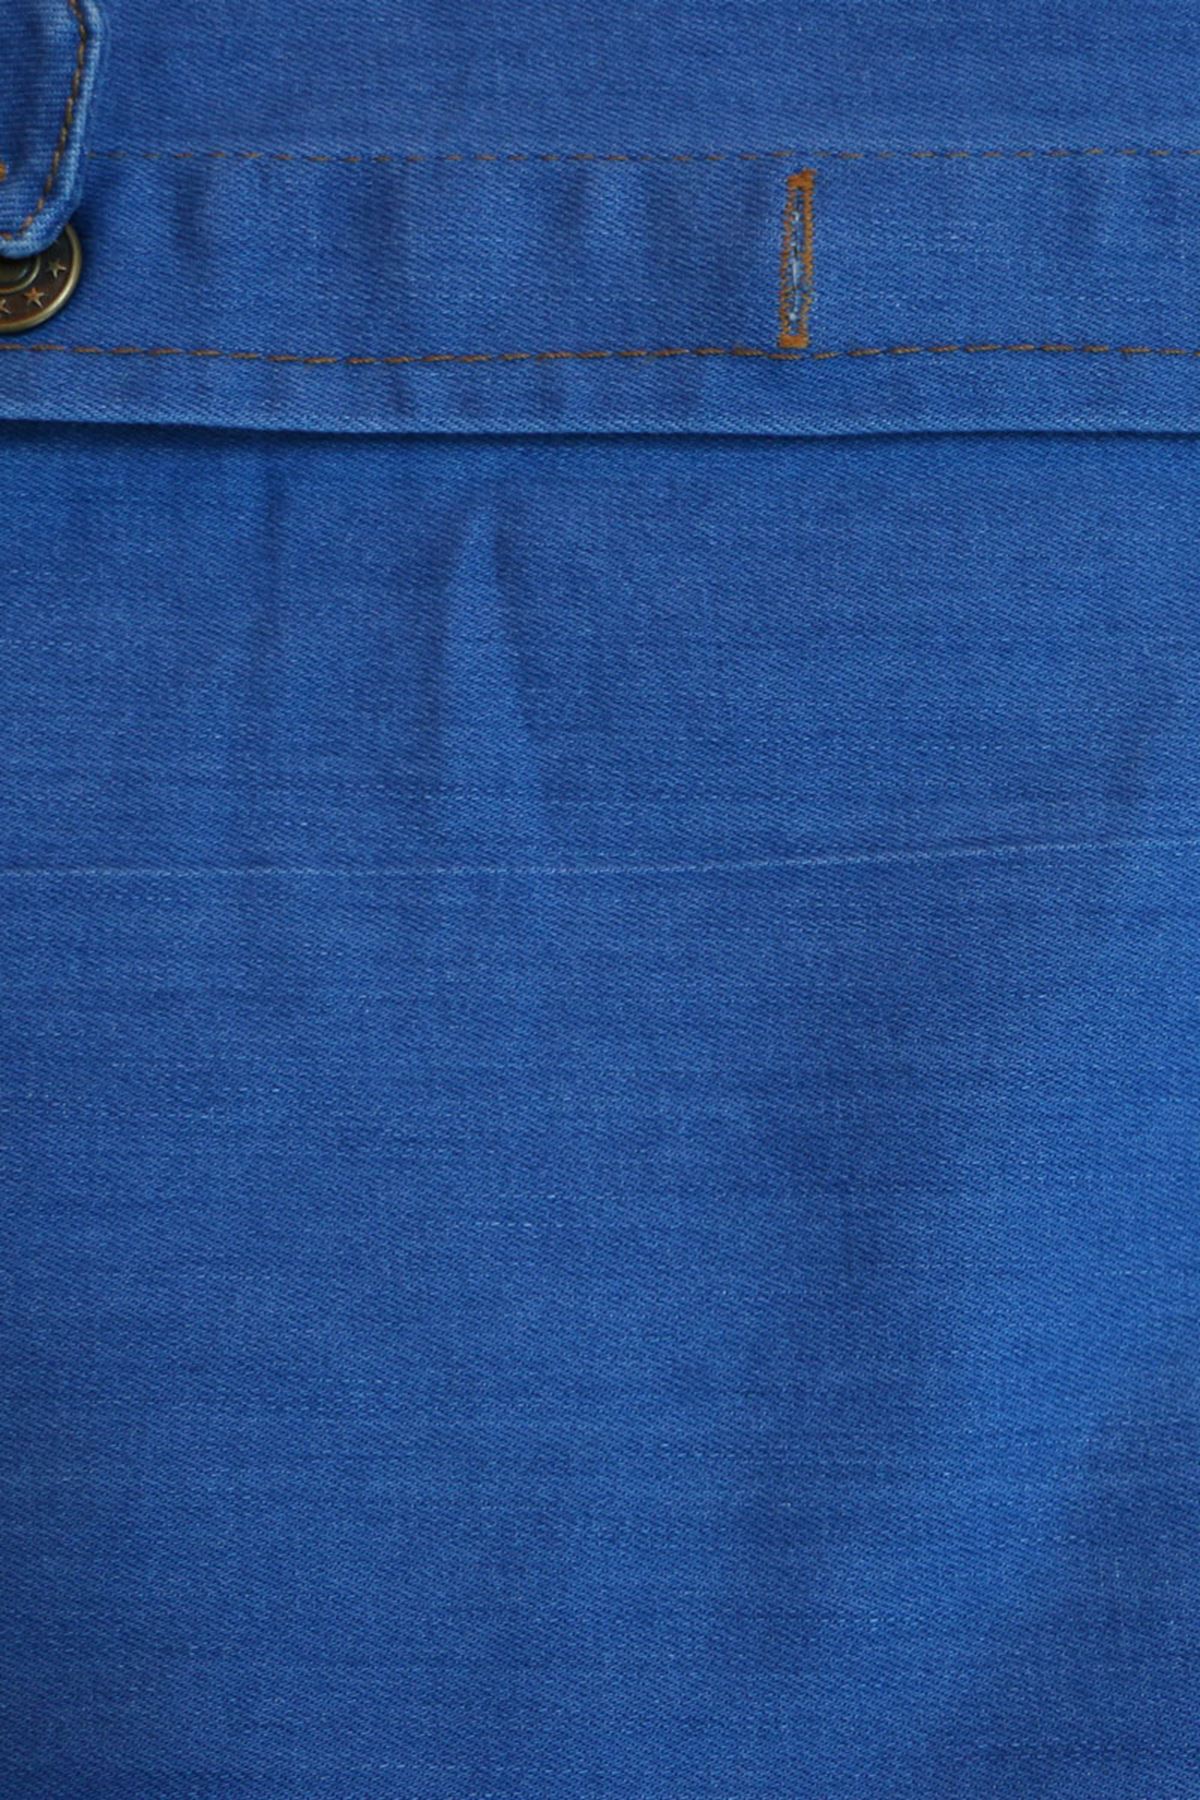 D-23041 Büyük Beden Taş Baskılı Defolu Kot Ceket - Mavi